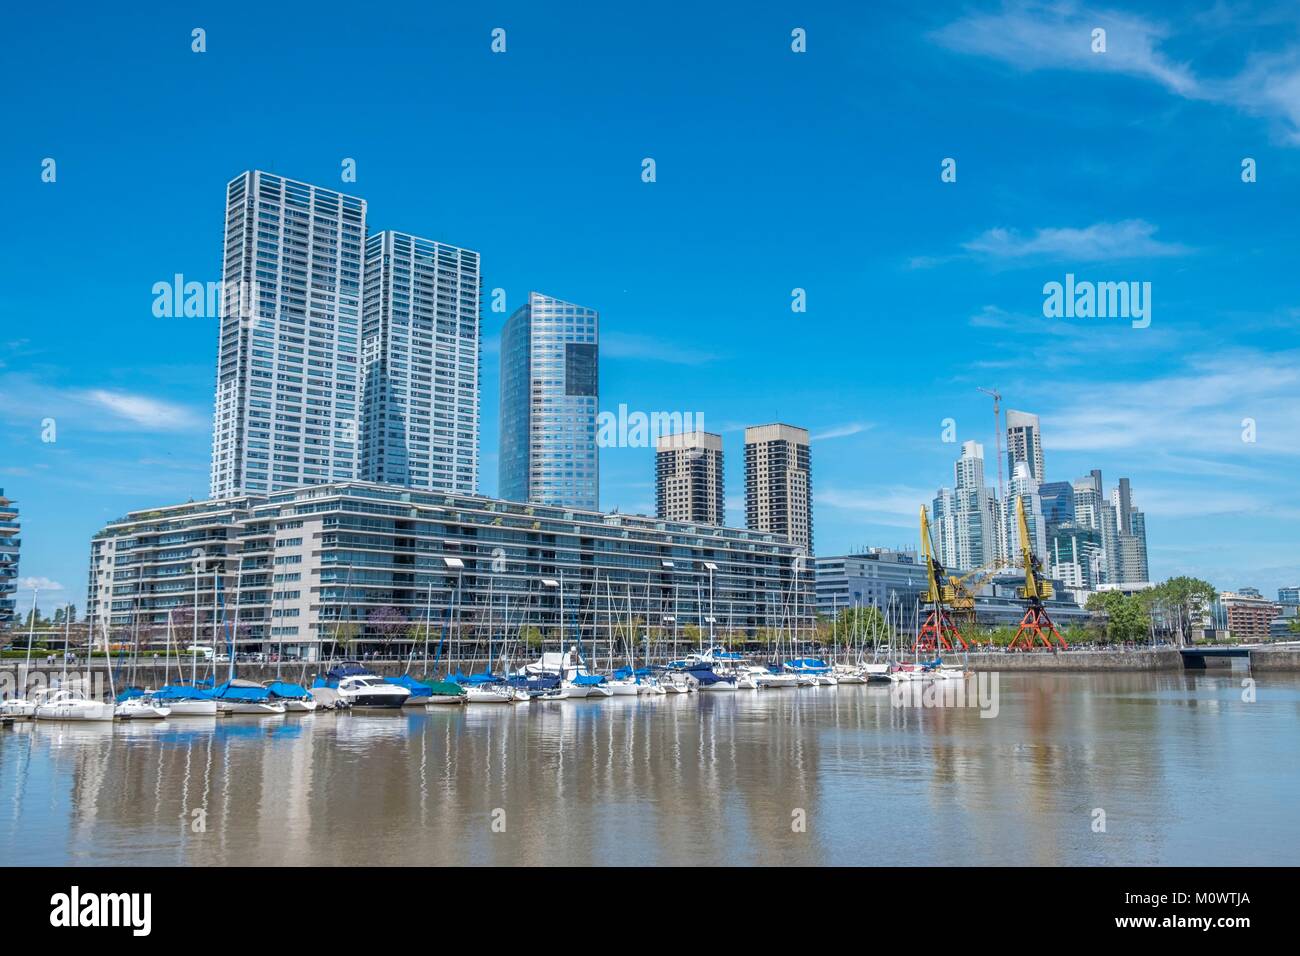 ,Argentina Buenos Aires,a Puerto Madero, ancienne zone portuaire transformée en nouveau quartier résidentiel et de bureaux dans les années 2000 Foto Stock